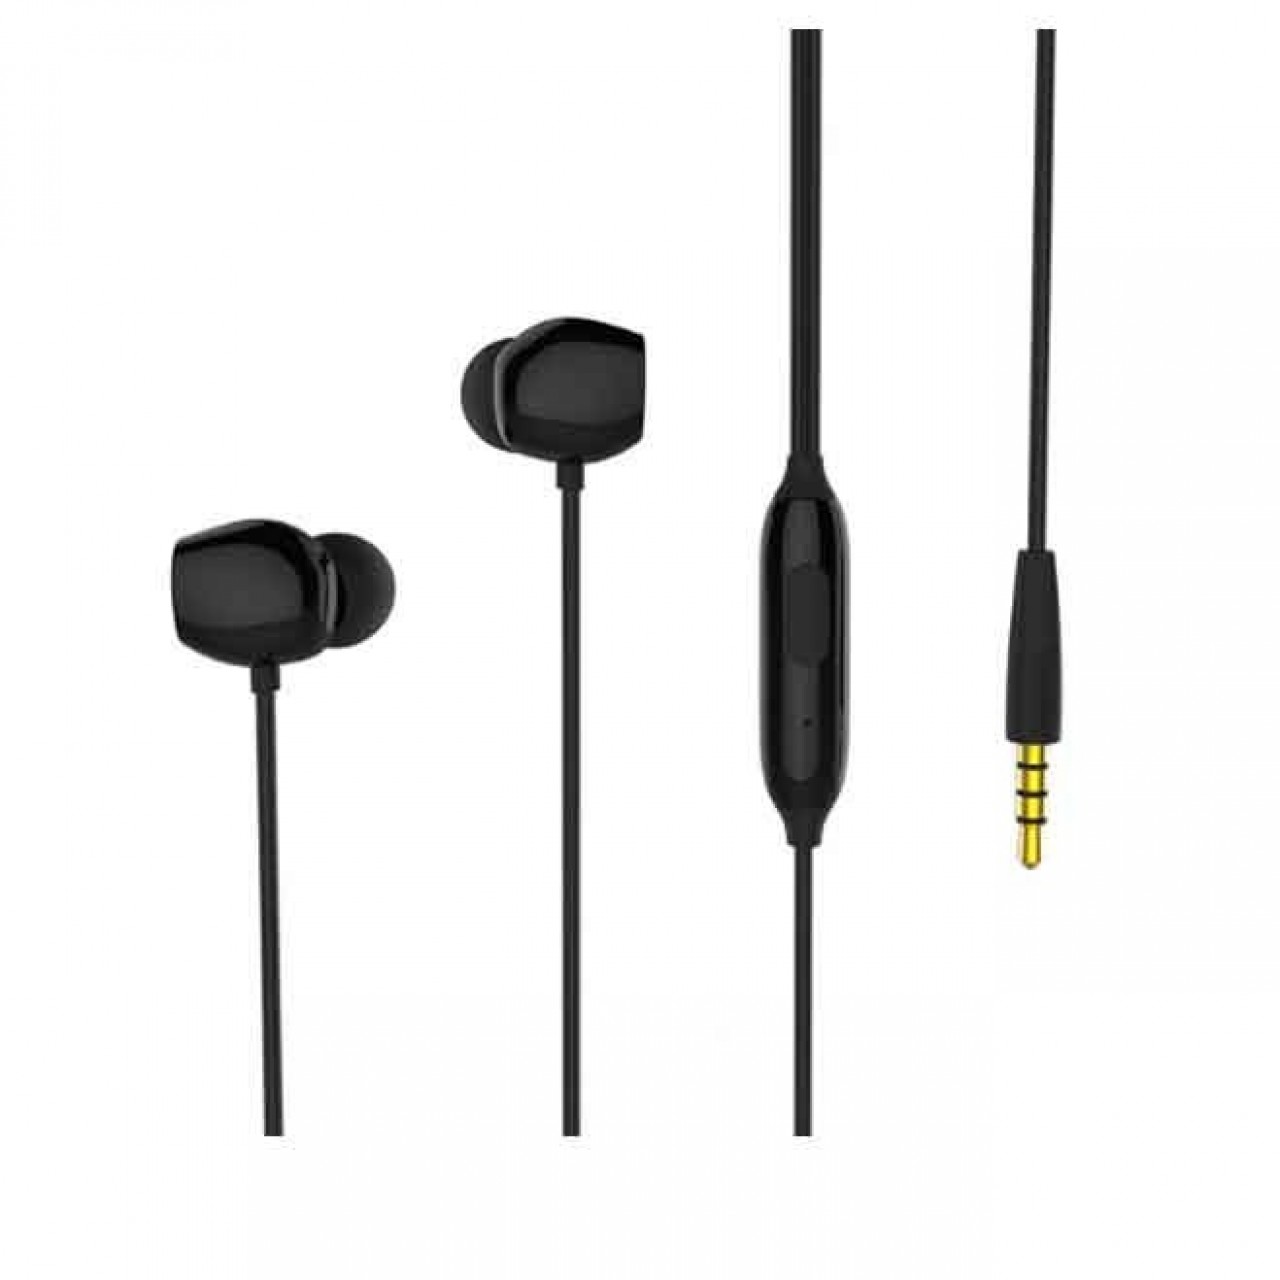 Remax Earphone RM-550 In-Ear Wired Handsfree - Black